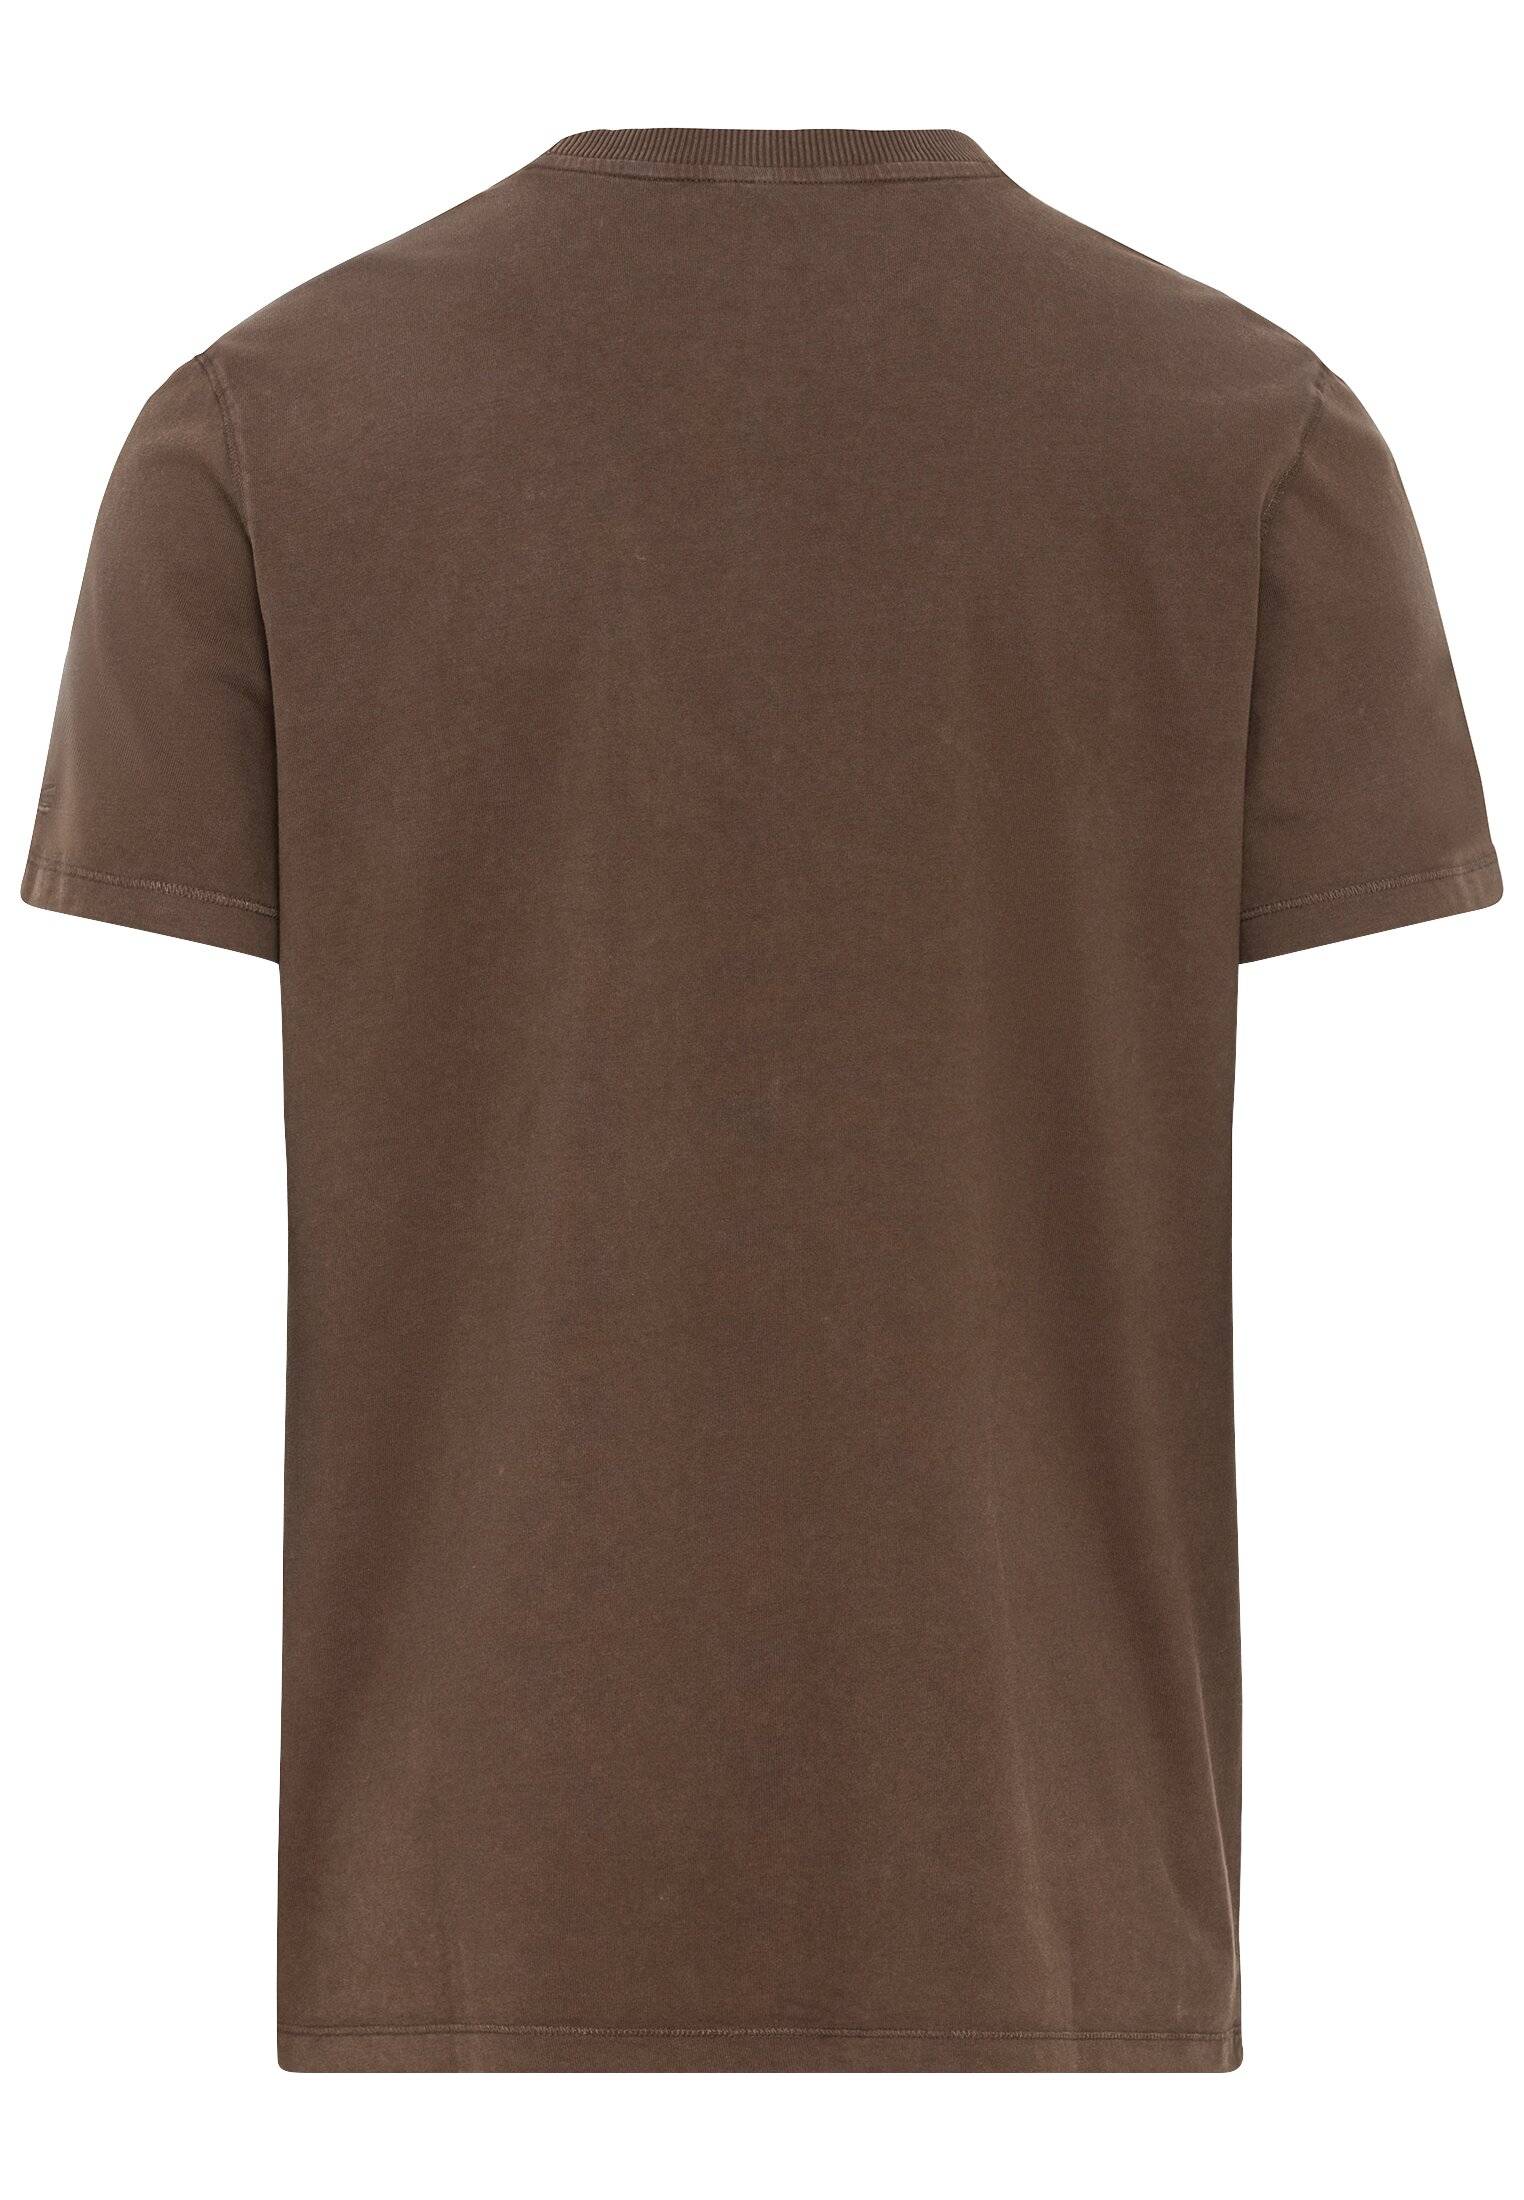 Мужская футболка Camel Active, коричневая, цвет коричневый, размер 56 - фото 2